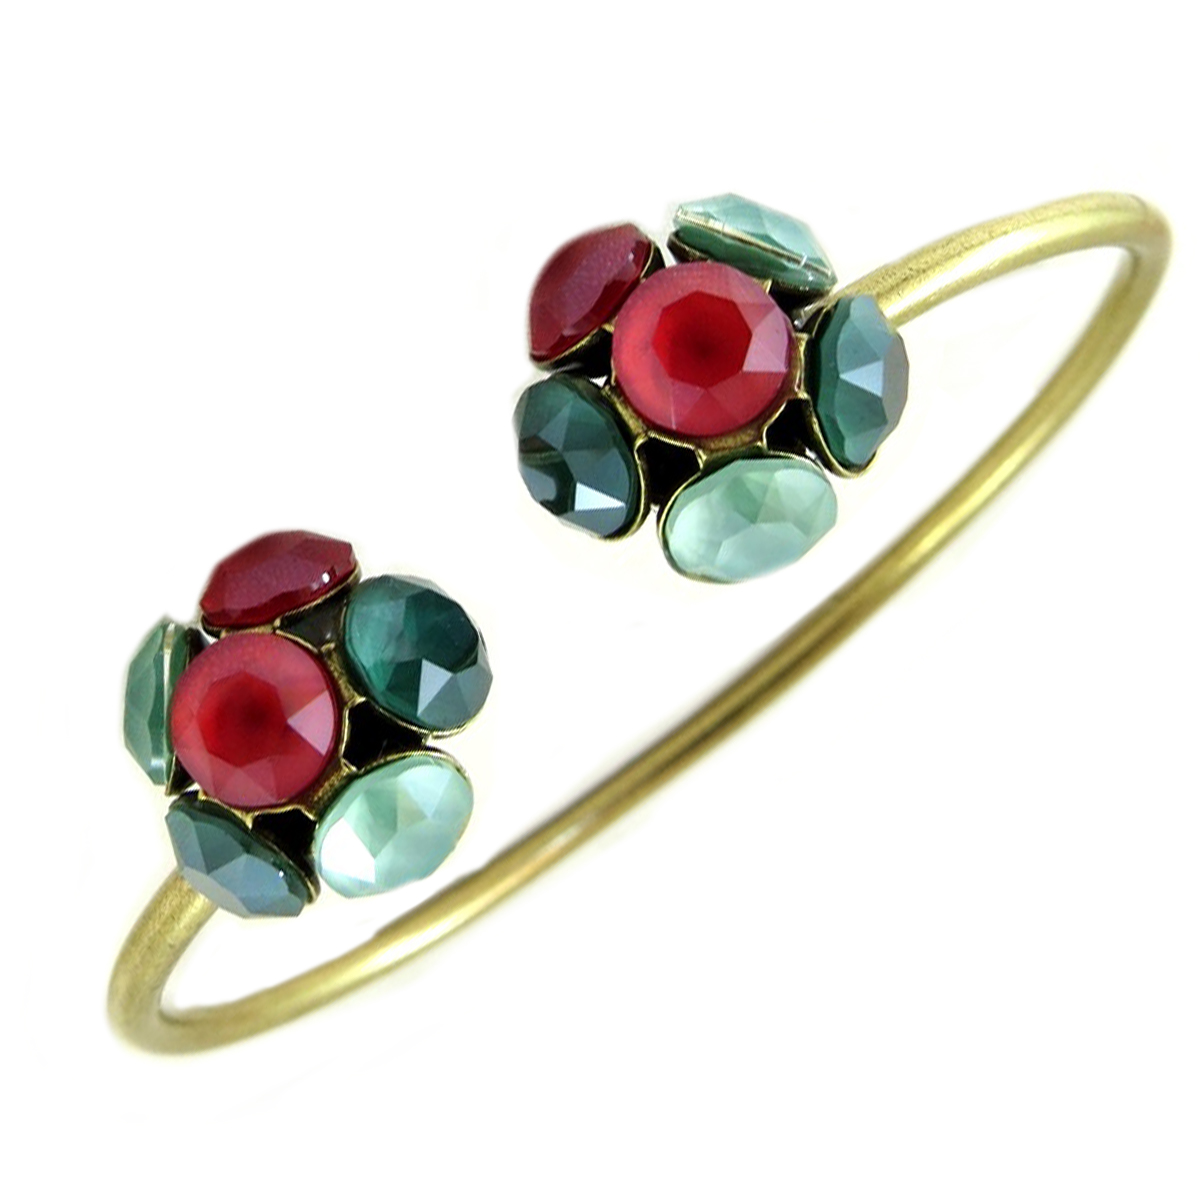 Bracelet artisanal \'Mythique Syracuse\' vert rouge doré - rosace fleurs 9x7 mm - [P9743]